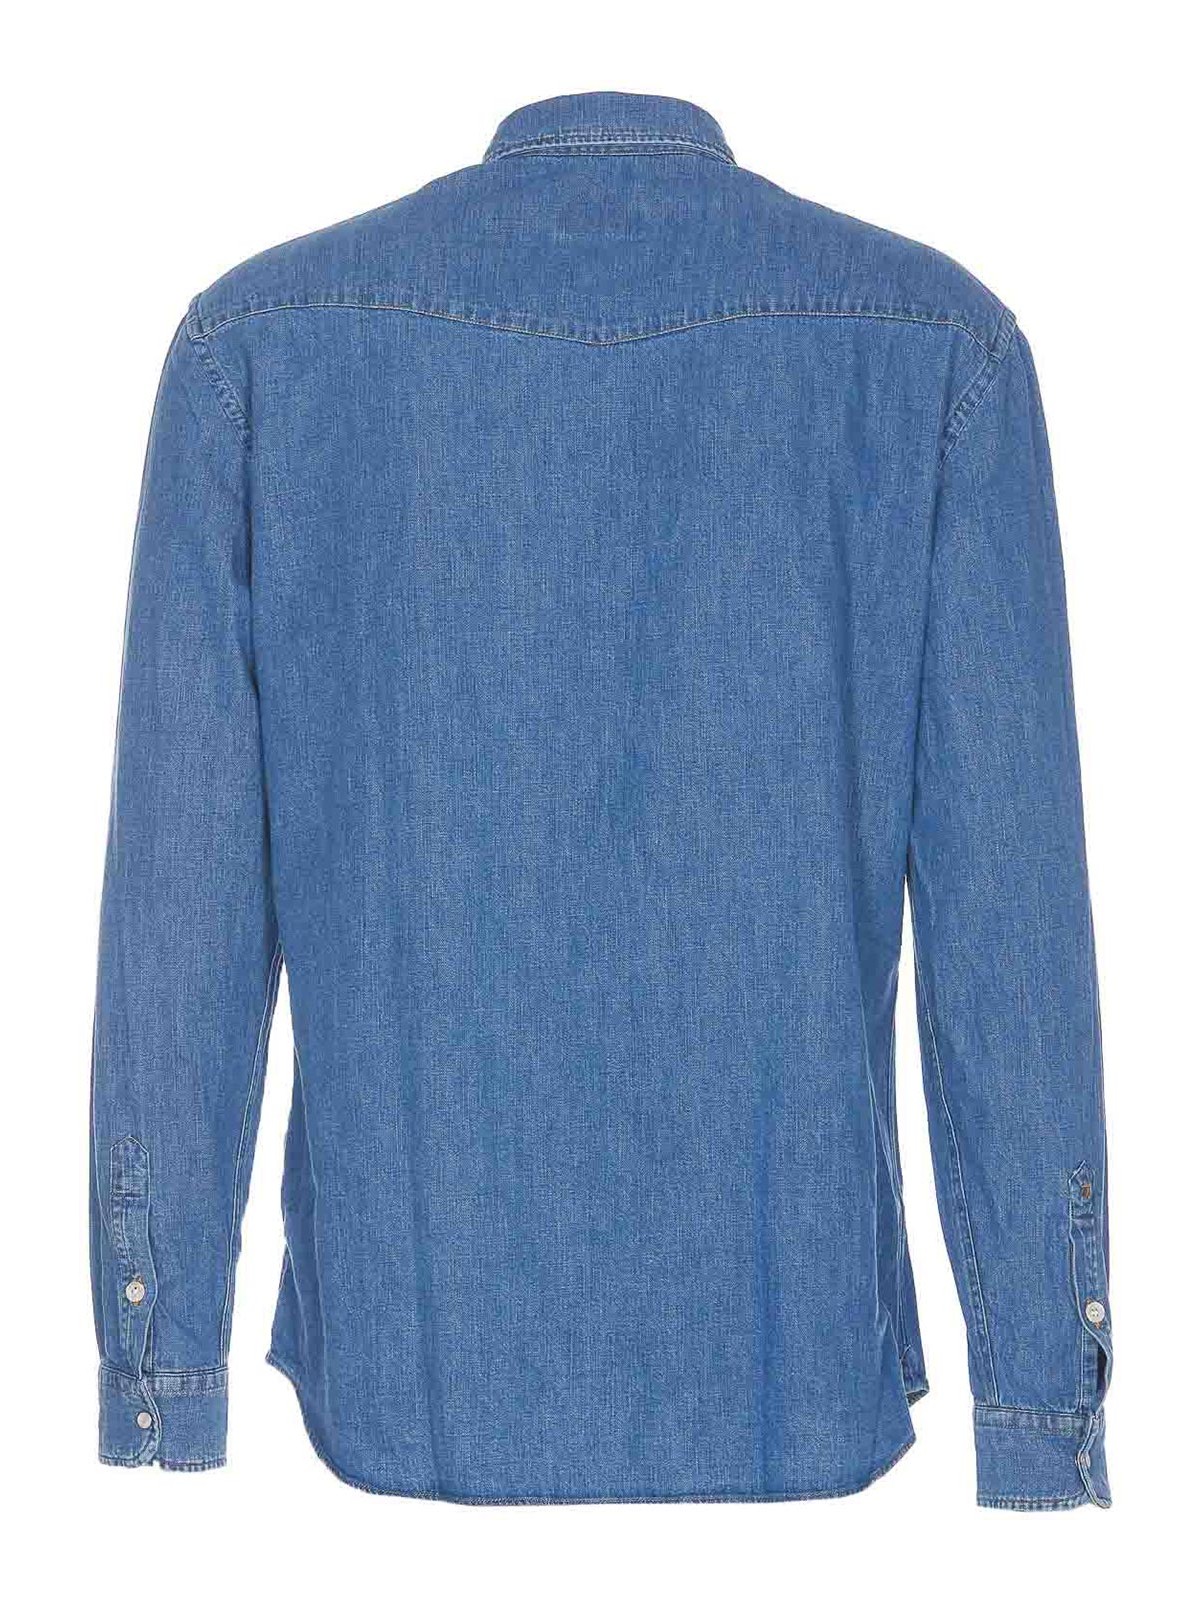 Shop Dondup Blue Denim Shirt Frontal Buttons